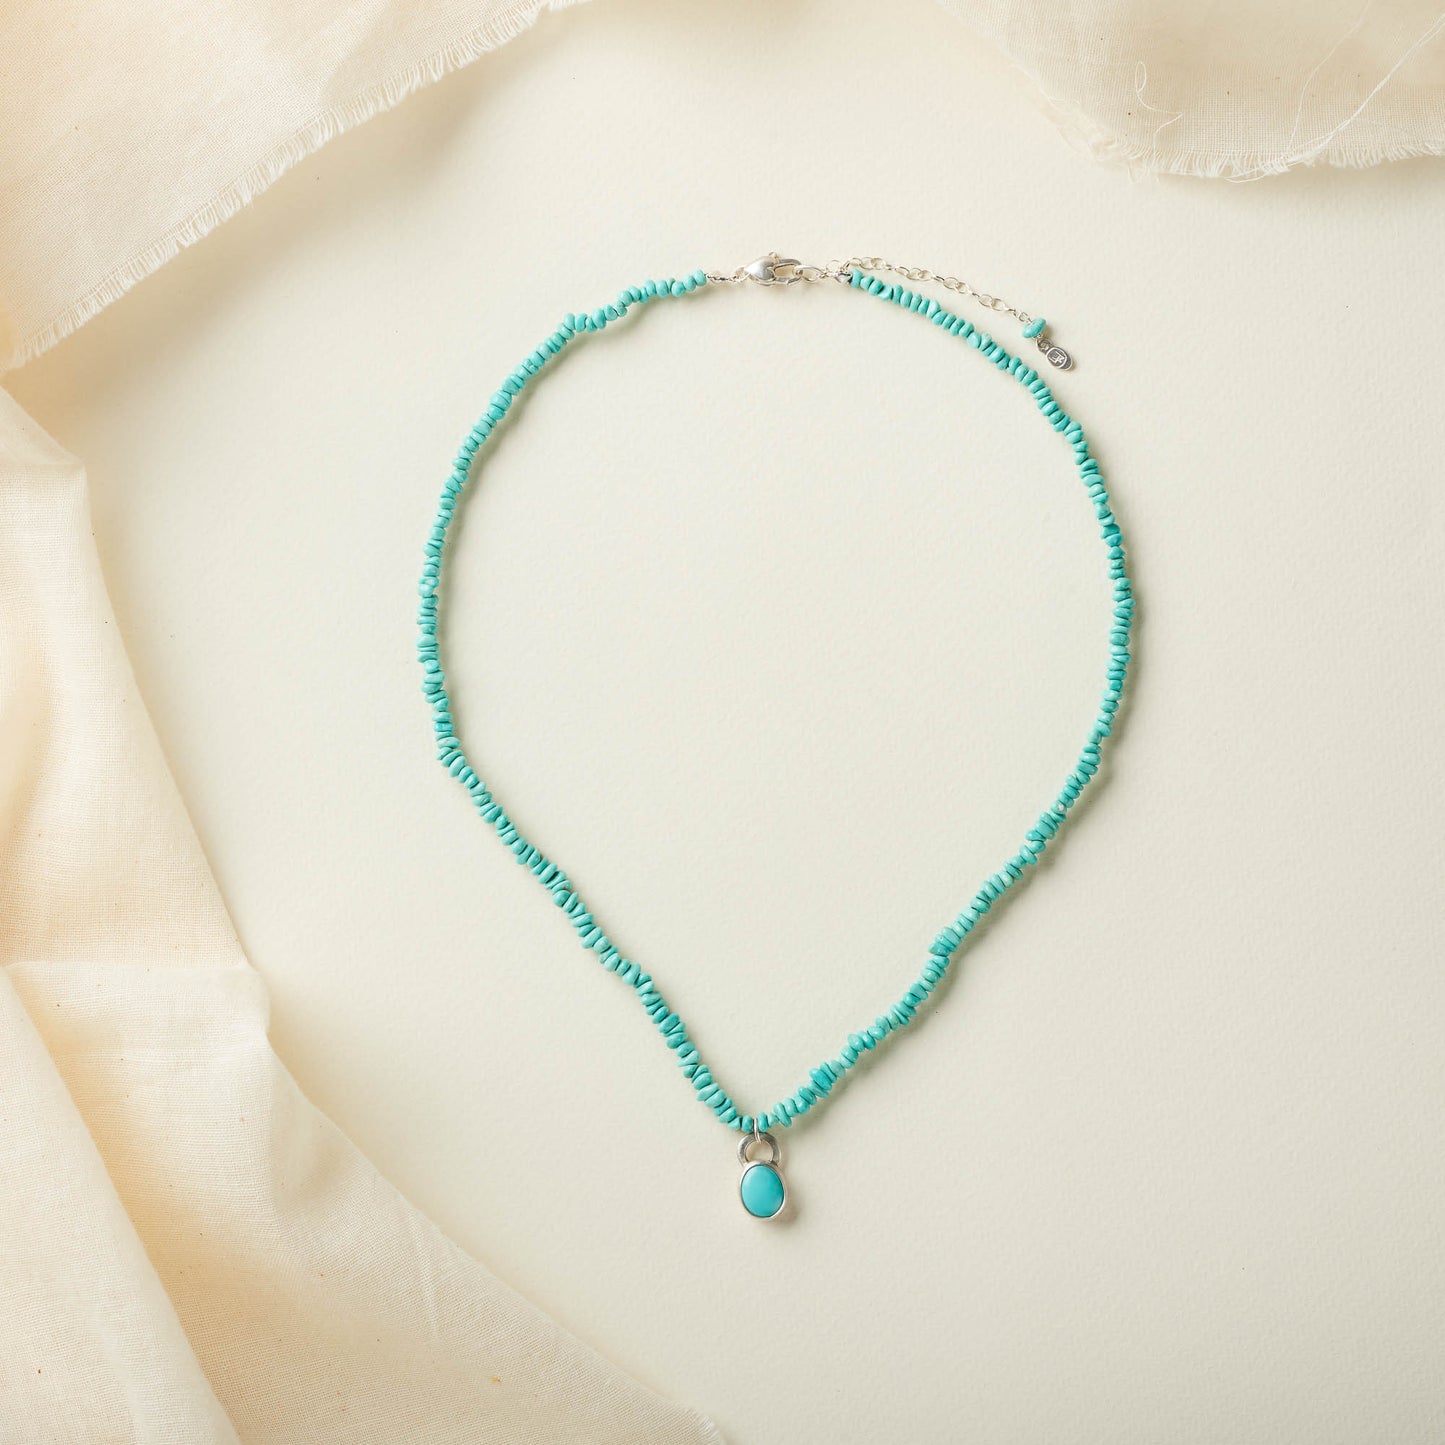 Beaded Turquoise Necklace with Bezel Set Turquoise Charm